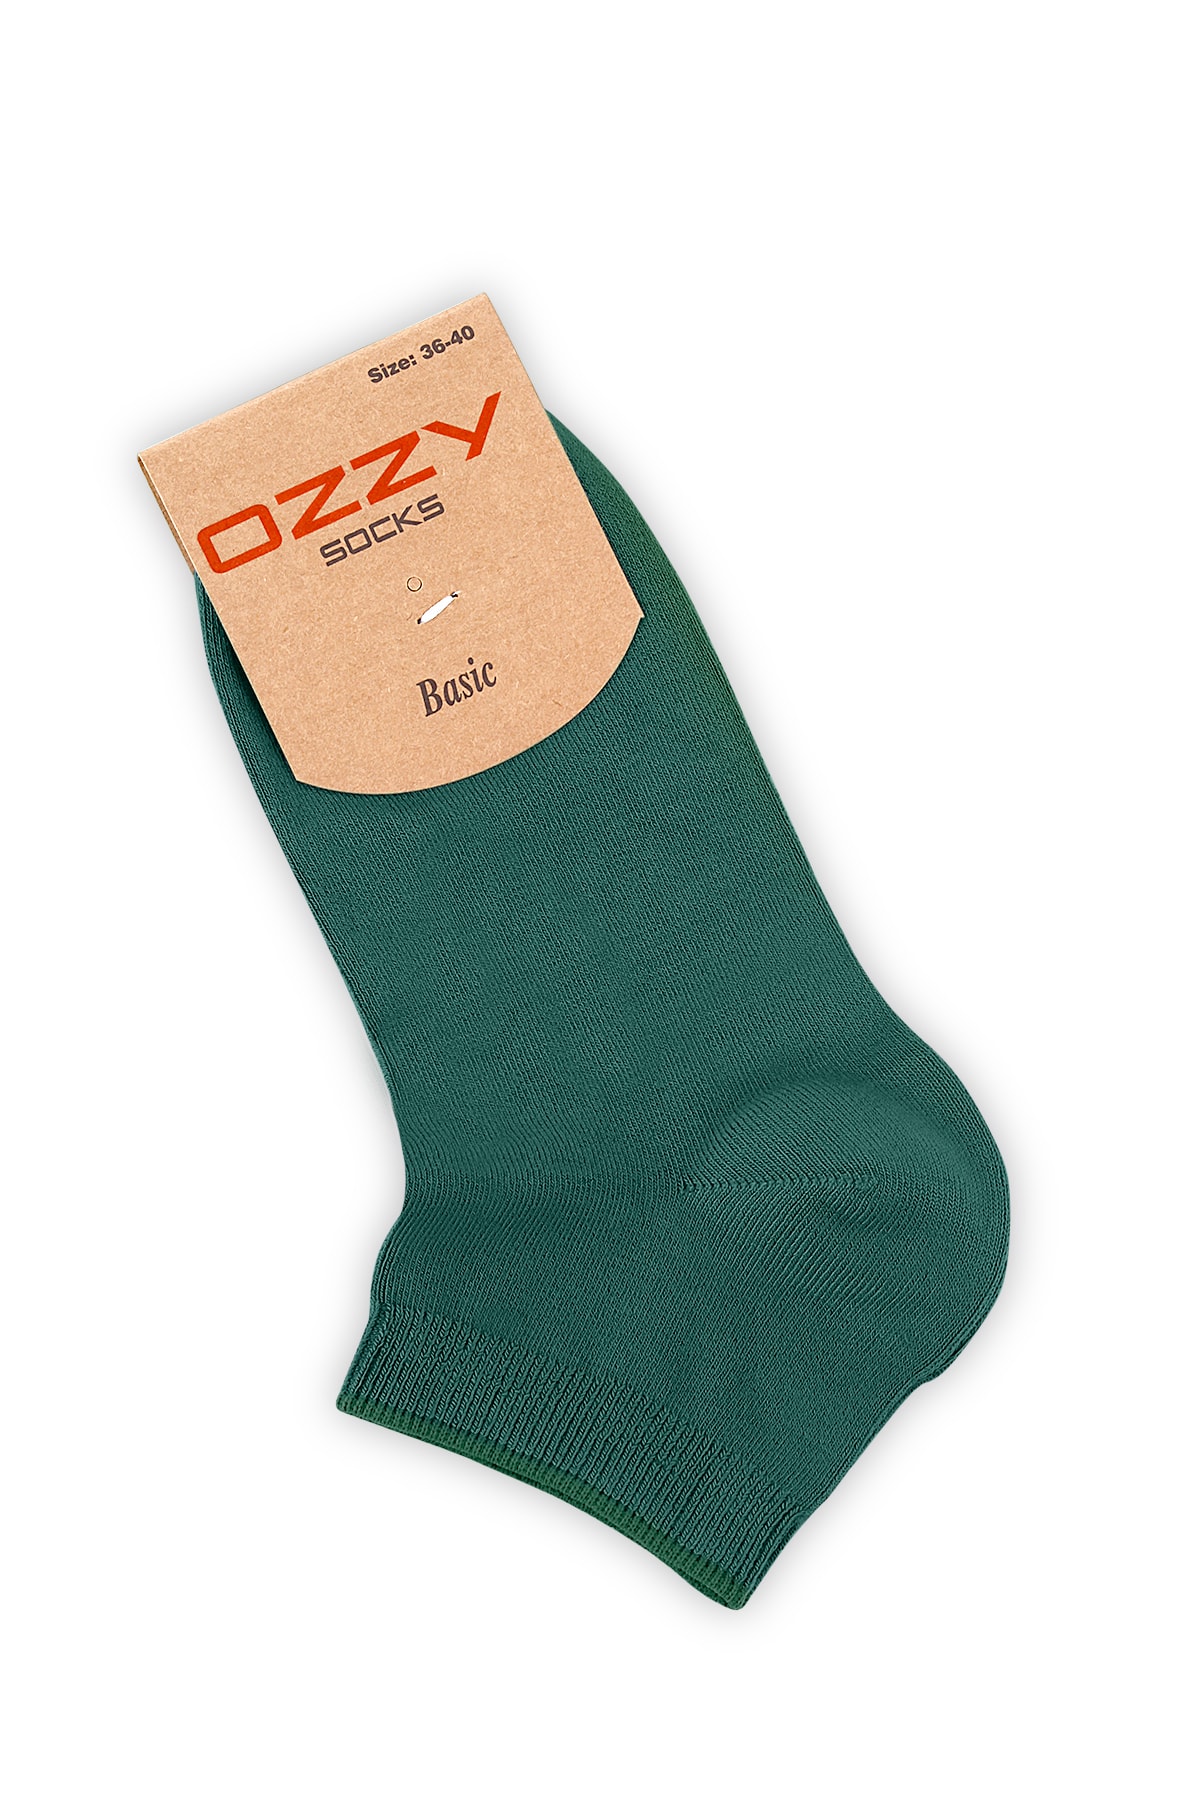 Ozzy Socks 8 Çift Bambu Kadın Dikişsiz Patik Çorap 4 Mevsim Dayanıklı Topuk Ve Burun PH11622